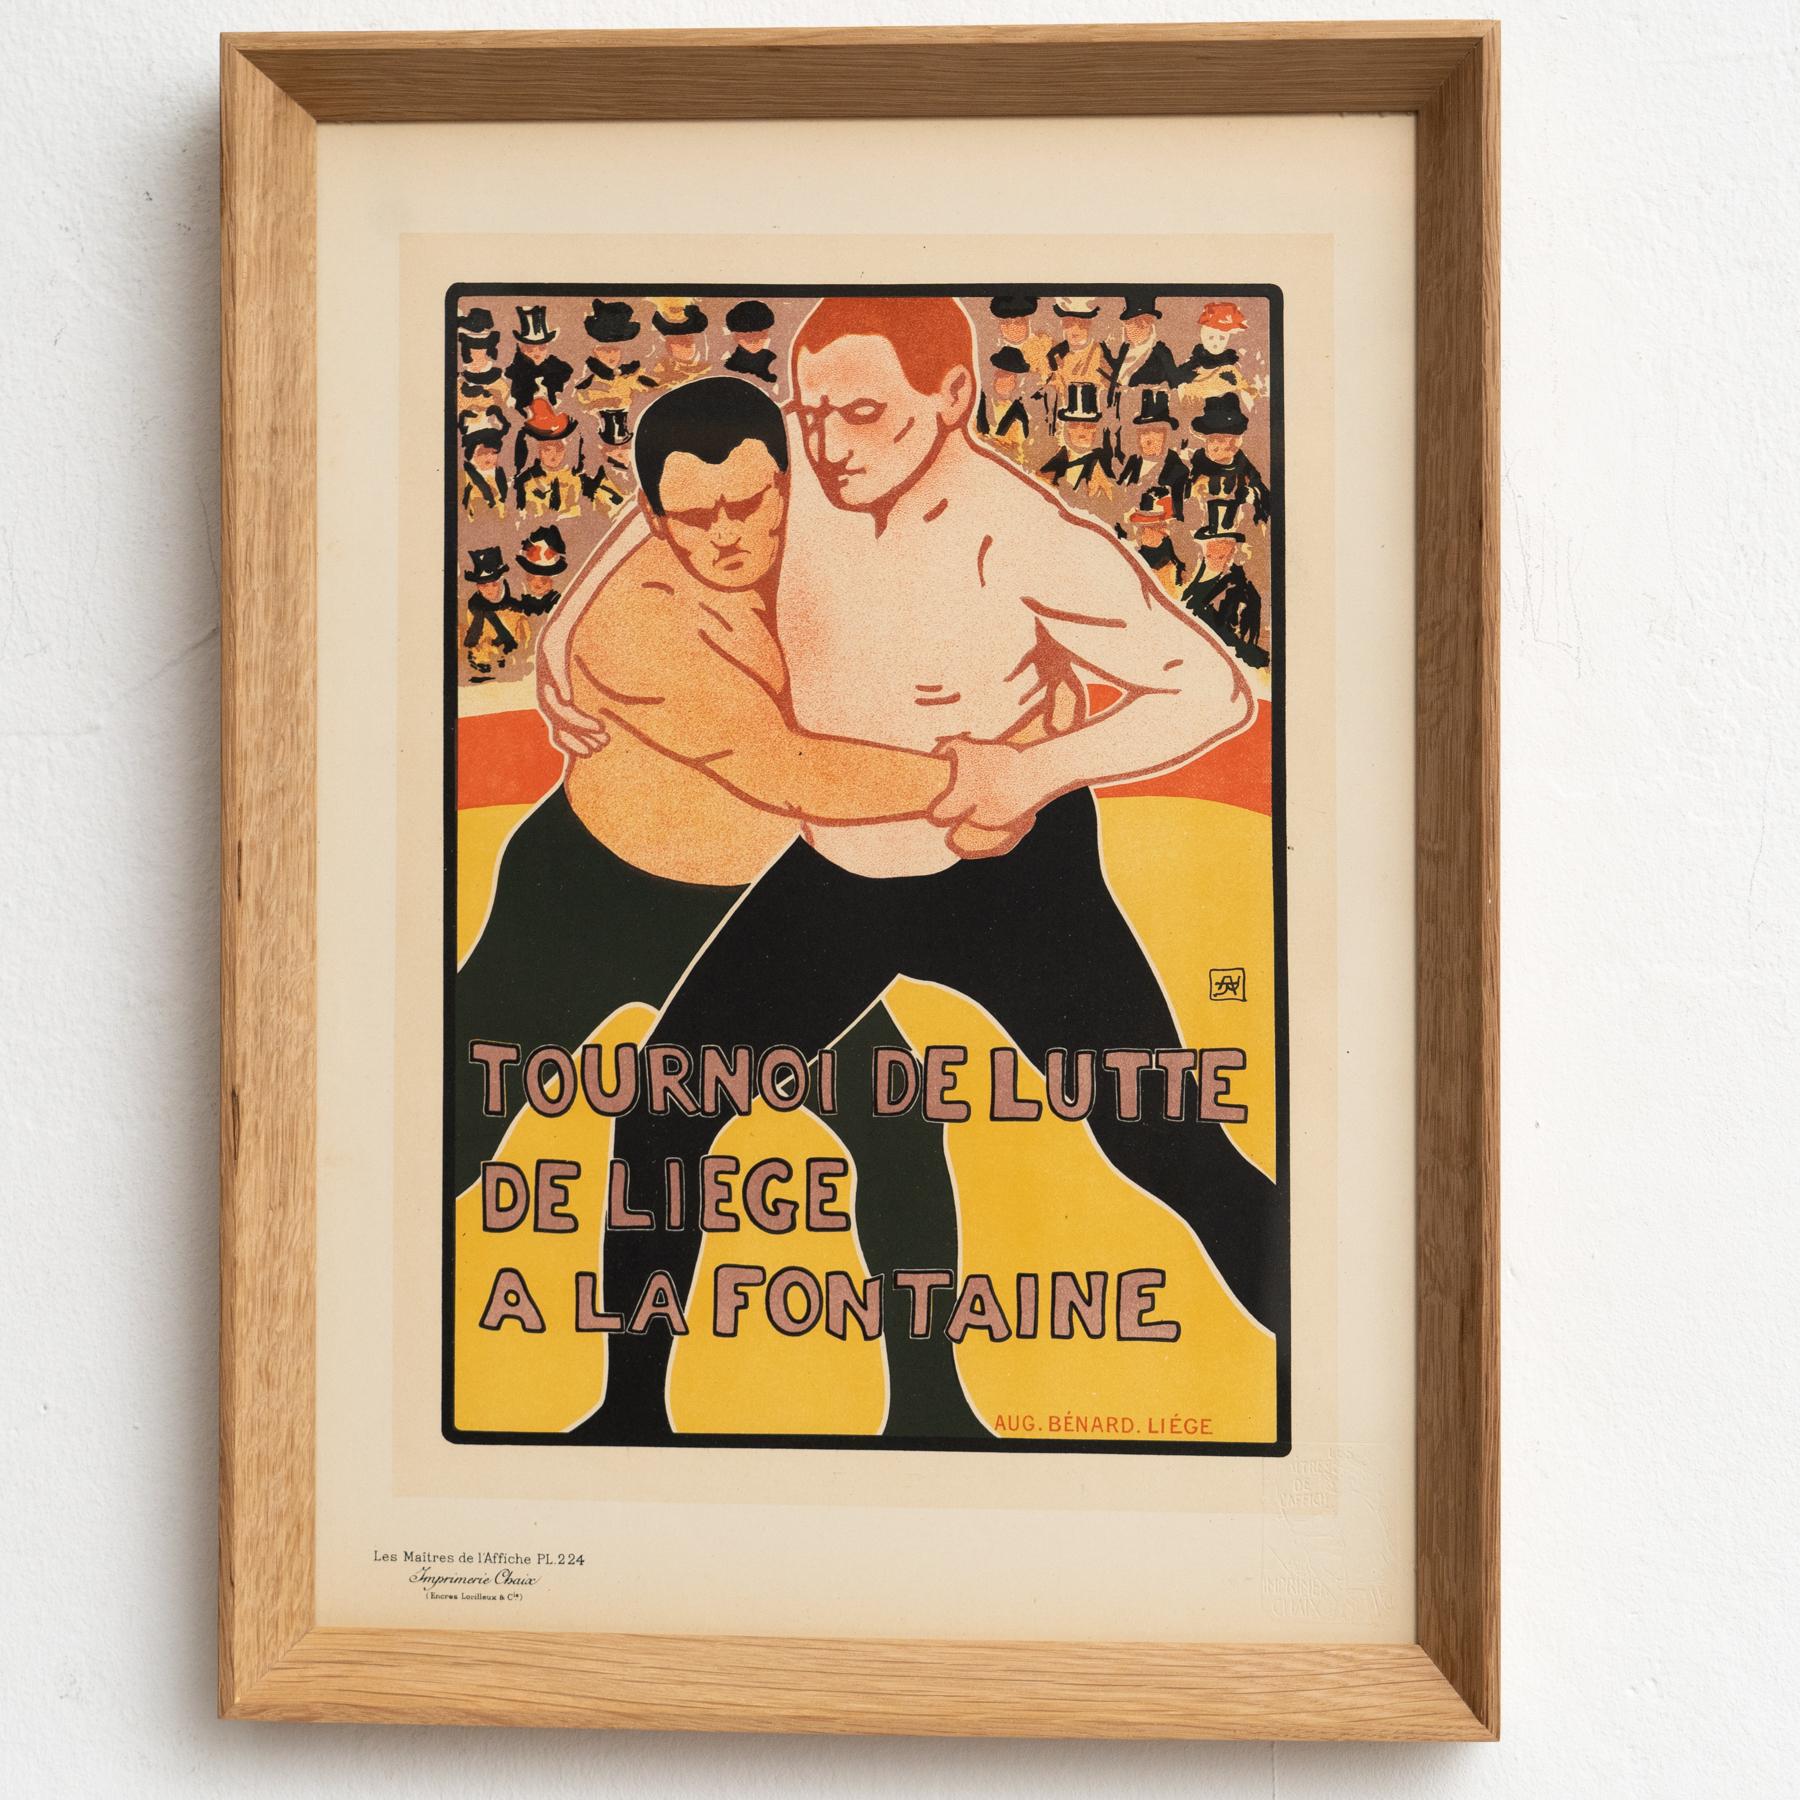 Mid-20th Century Tourney De Lutte Artwork by Aug. Bernard by Les Maitres de l'Affiche, circa 1930 For Sale